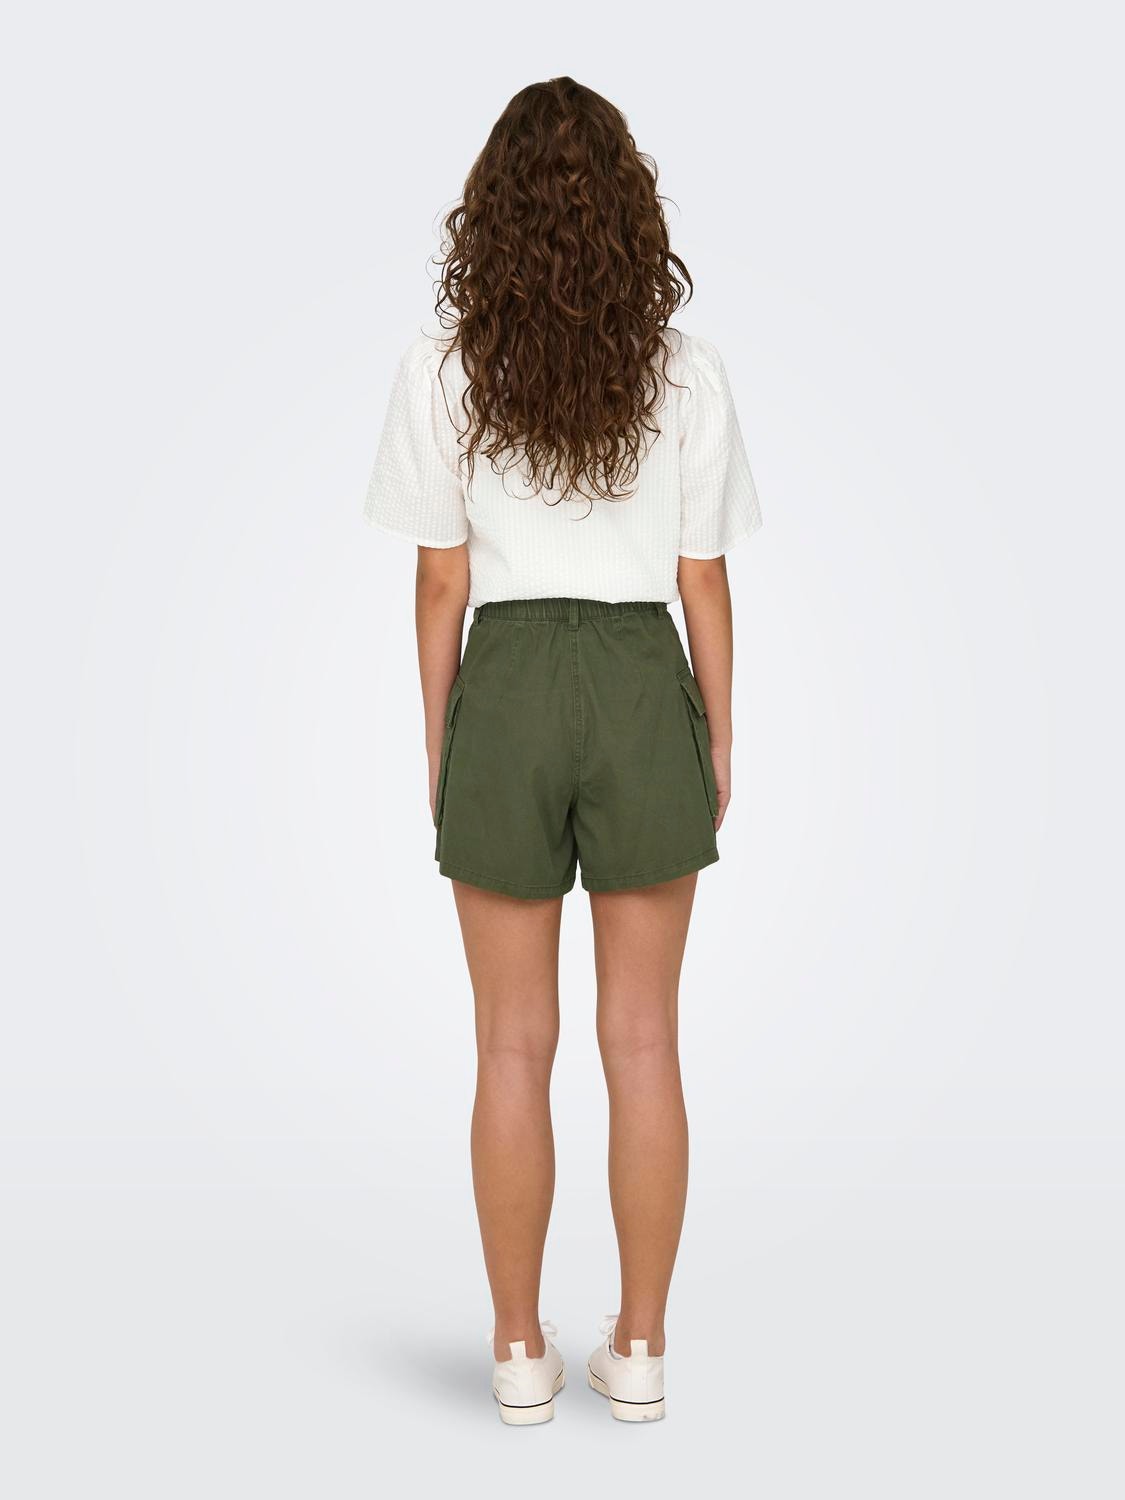 ONLY Shorts estilo cargo Corte regular Cintura media -Ivy Green - 15316968